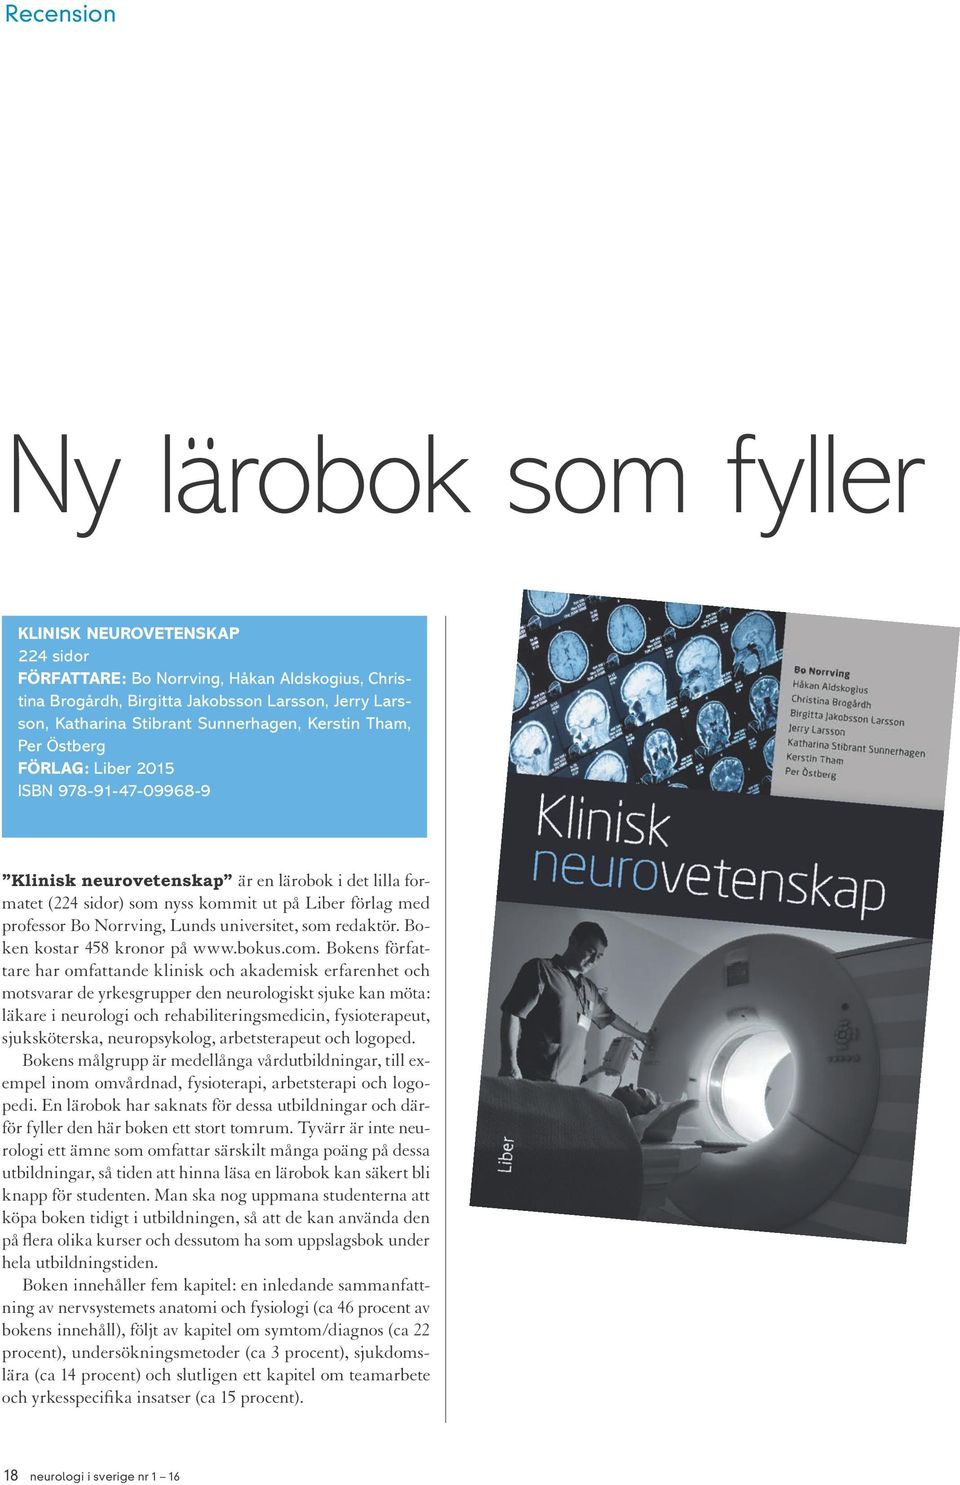 Bo Norrving, Lunds universitet, som redaktör. Boken kostar 458 kronor på www.bokus.com.